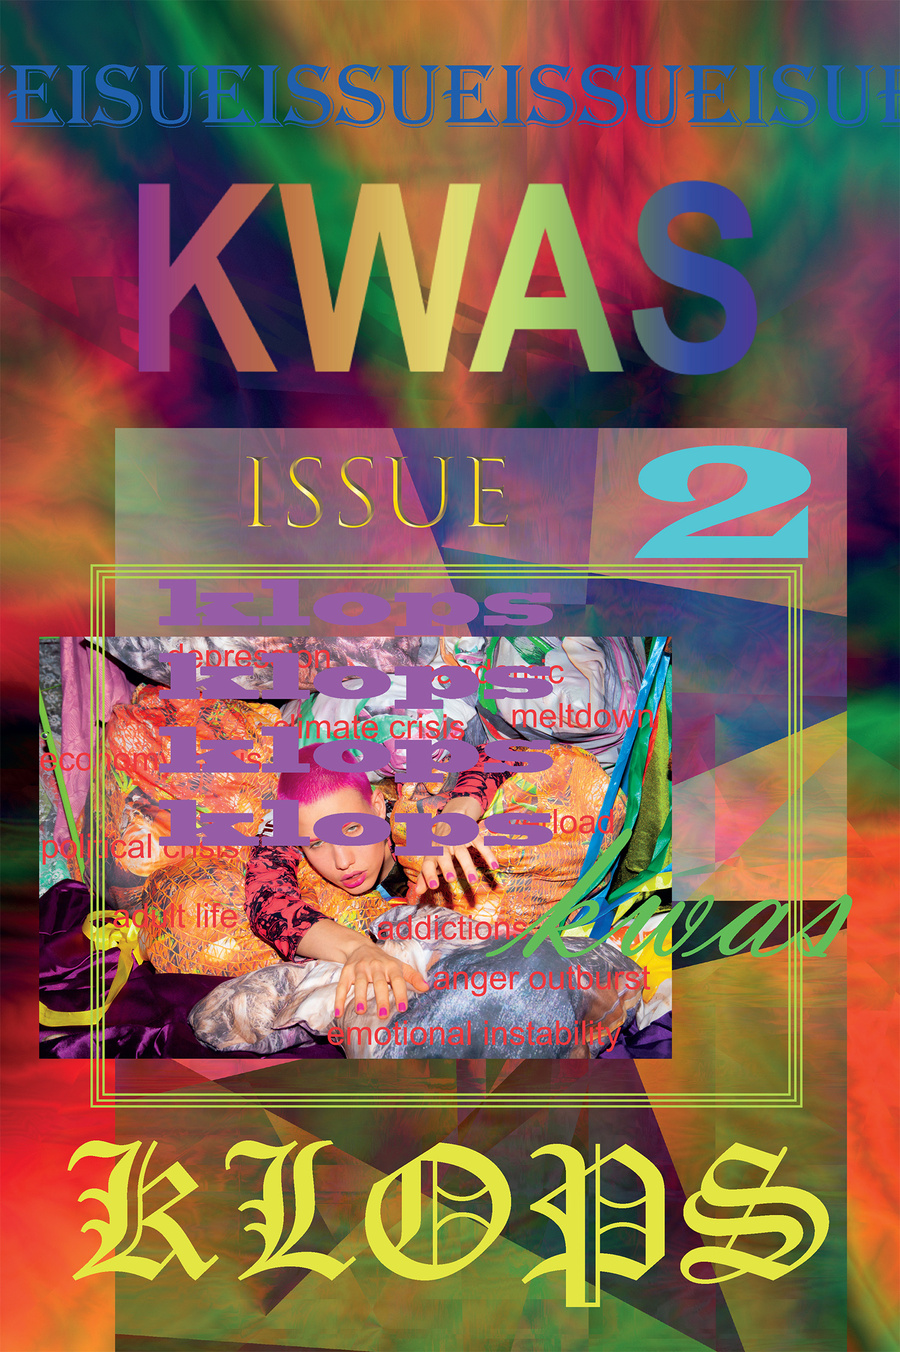 KWAS Issue 2: KLOPS